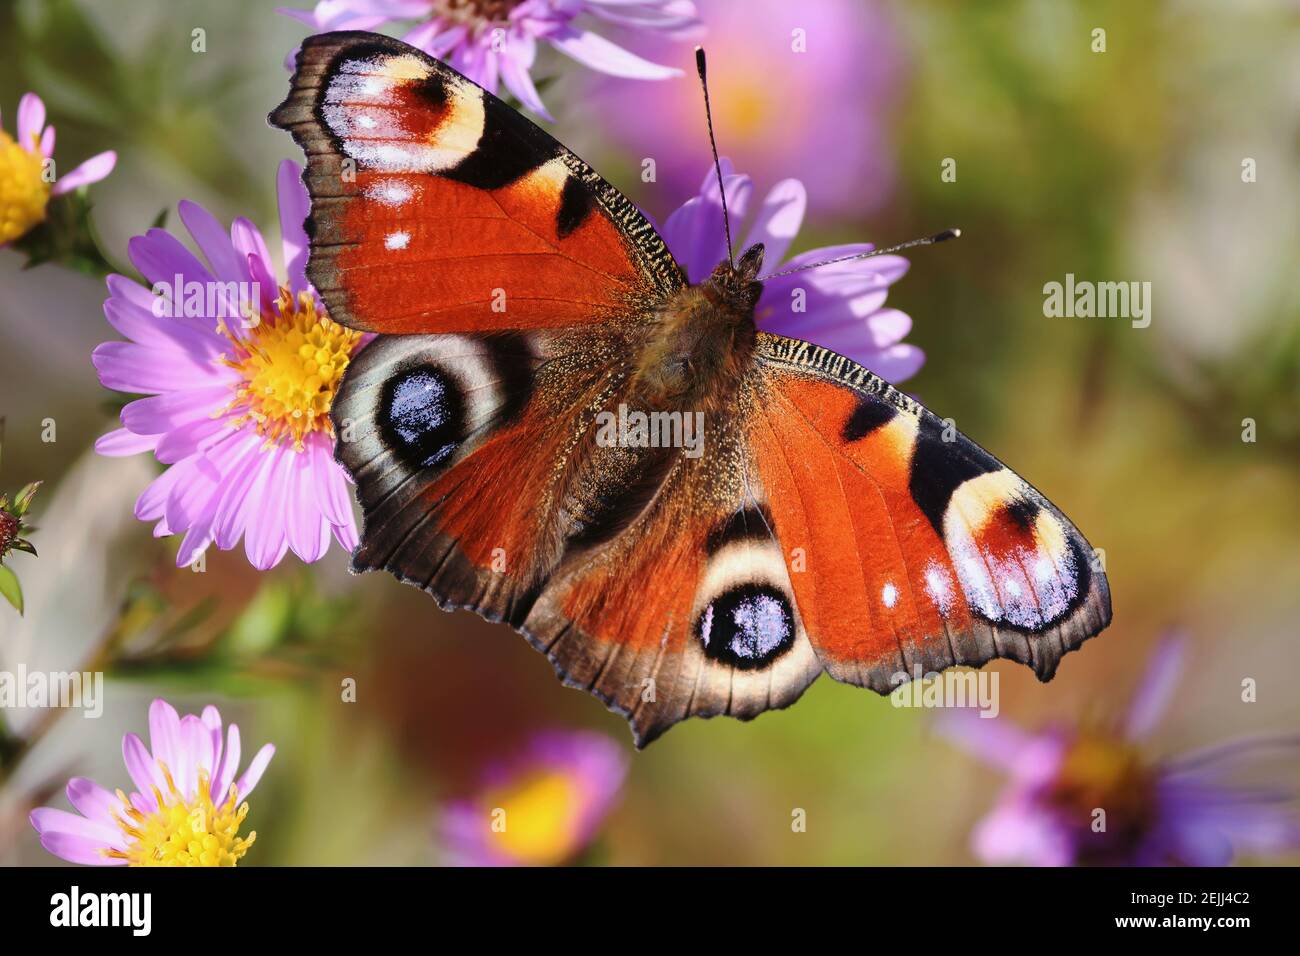 Aglais io oder Europäischer Pfau Schmetterling oder Pfau. Schmetterling auf einer Blume. Ein hell erleuchteter rot-brauner orangefarbener Schmetterling mit blauen Fliederflecken auf Flügeln. Stockfoto